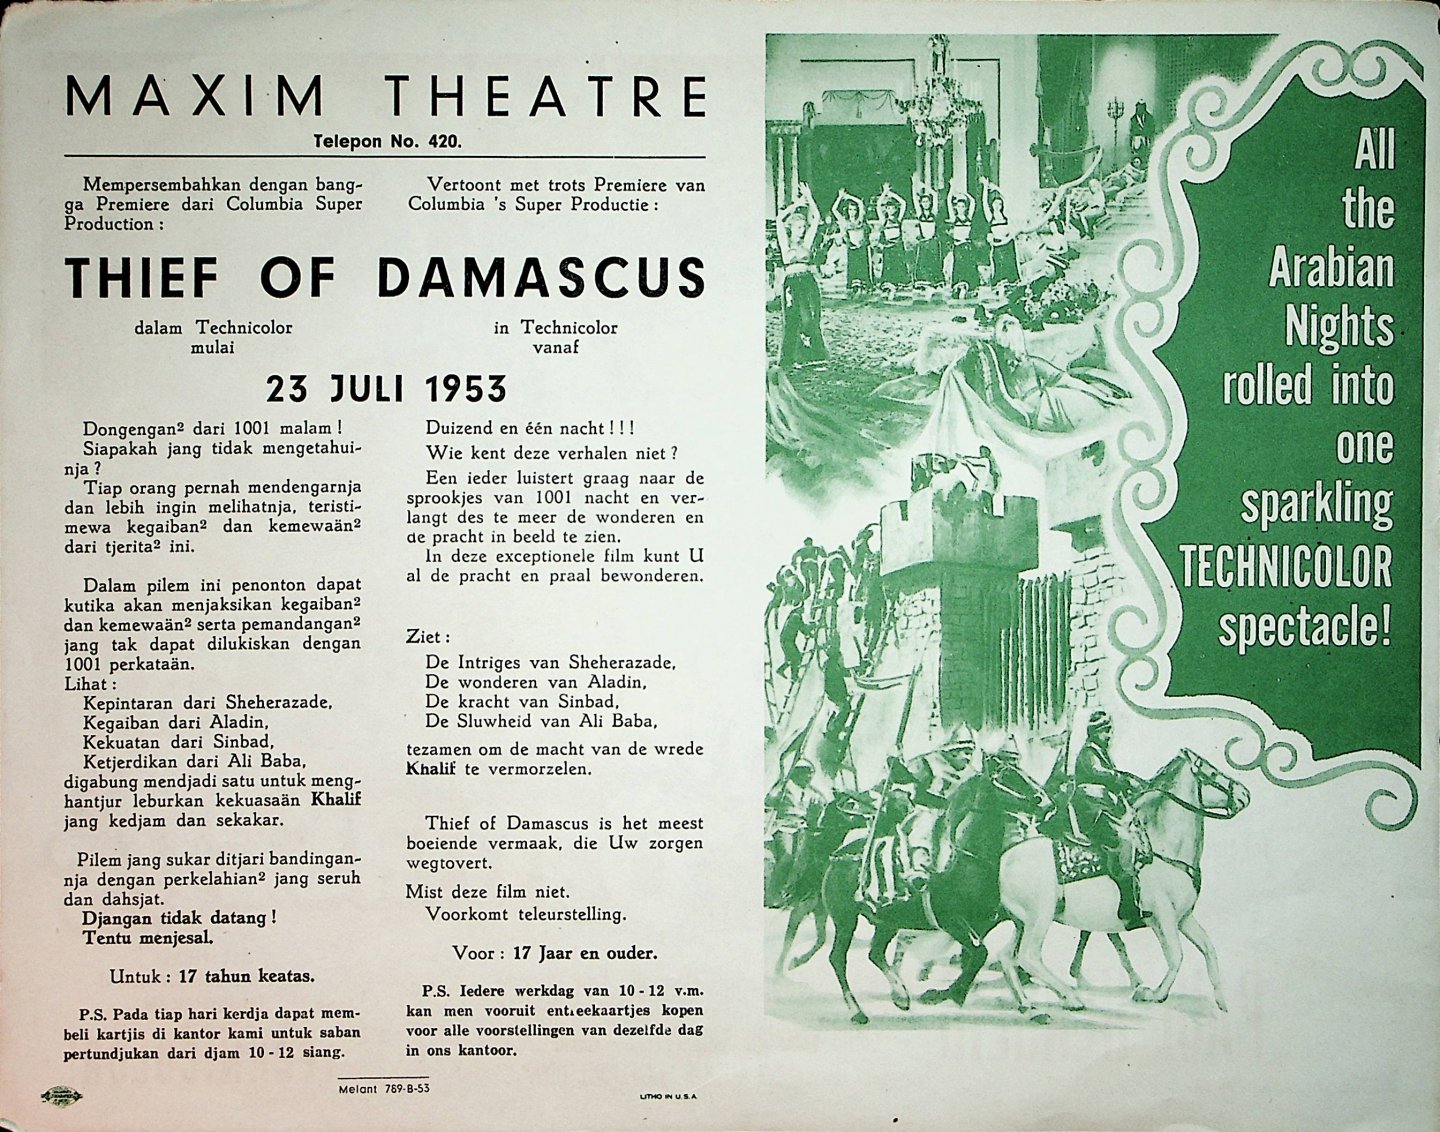 Thief of Damascus - [Affiche voor de filmvertoning van de Amerikaanse film "Thief of Damascus" in het Maxim Theatre in Bogor vanaf 23 Juli 1953]